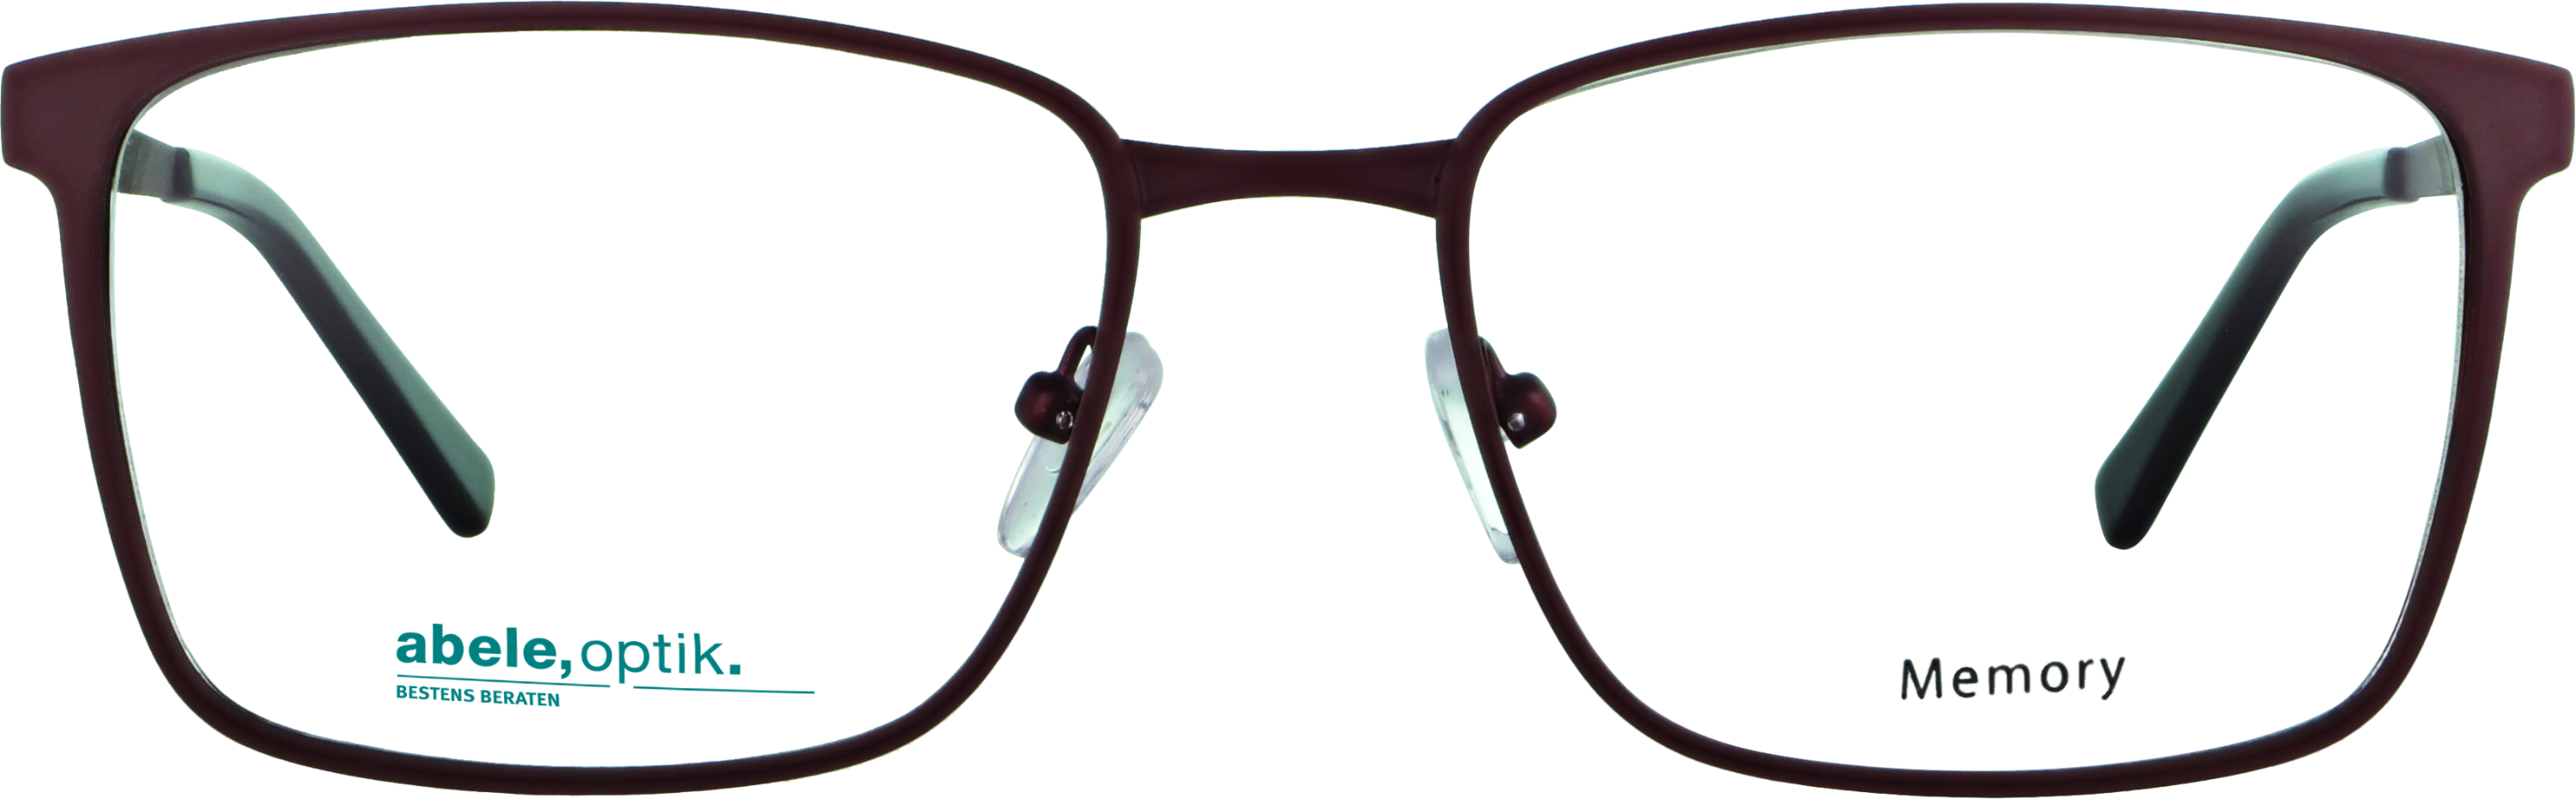 Das Bild zeigt die Korrektionsbrille 143401 von der Marke Abele Optik in rot matt.